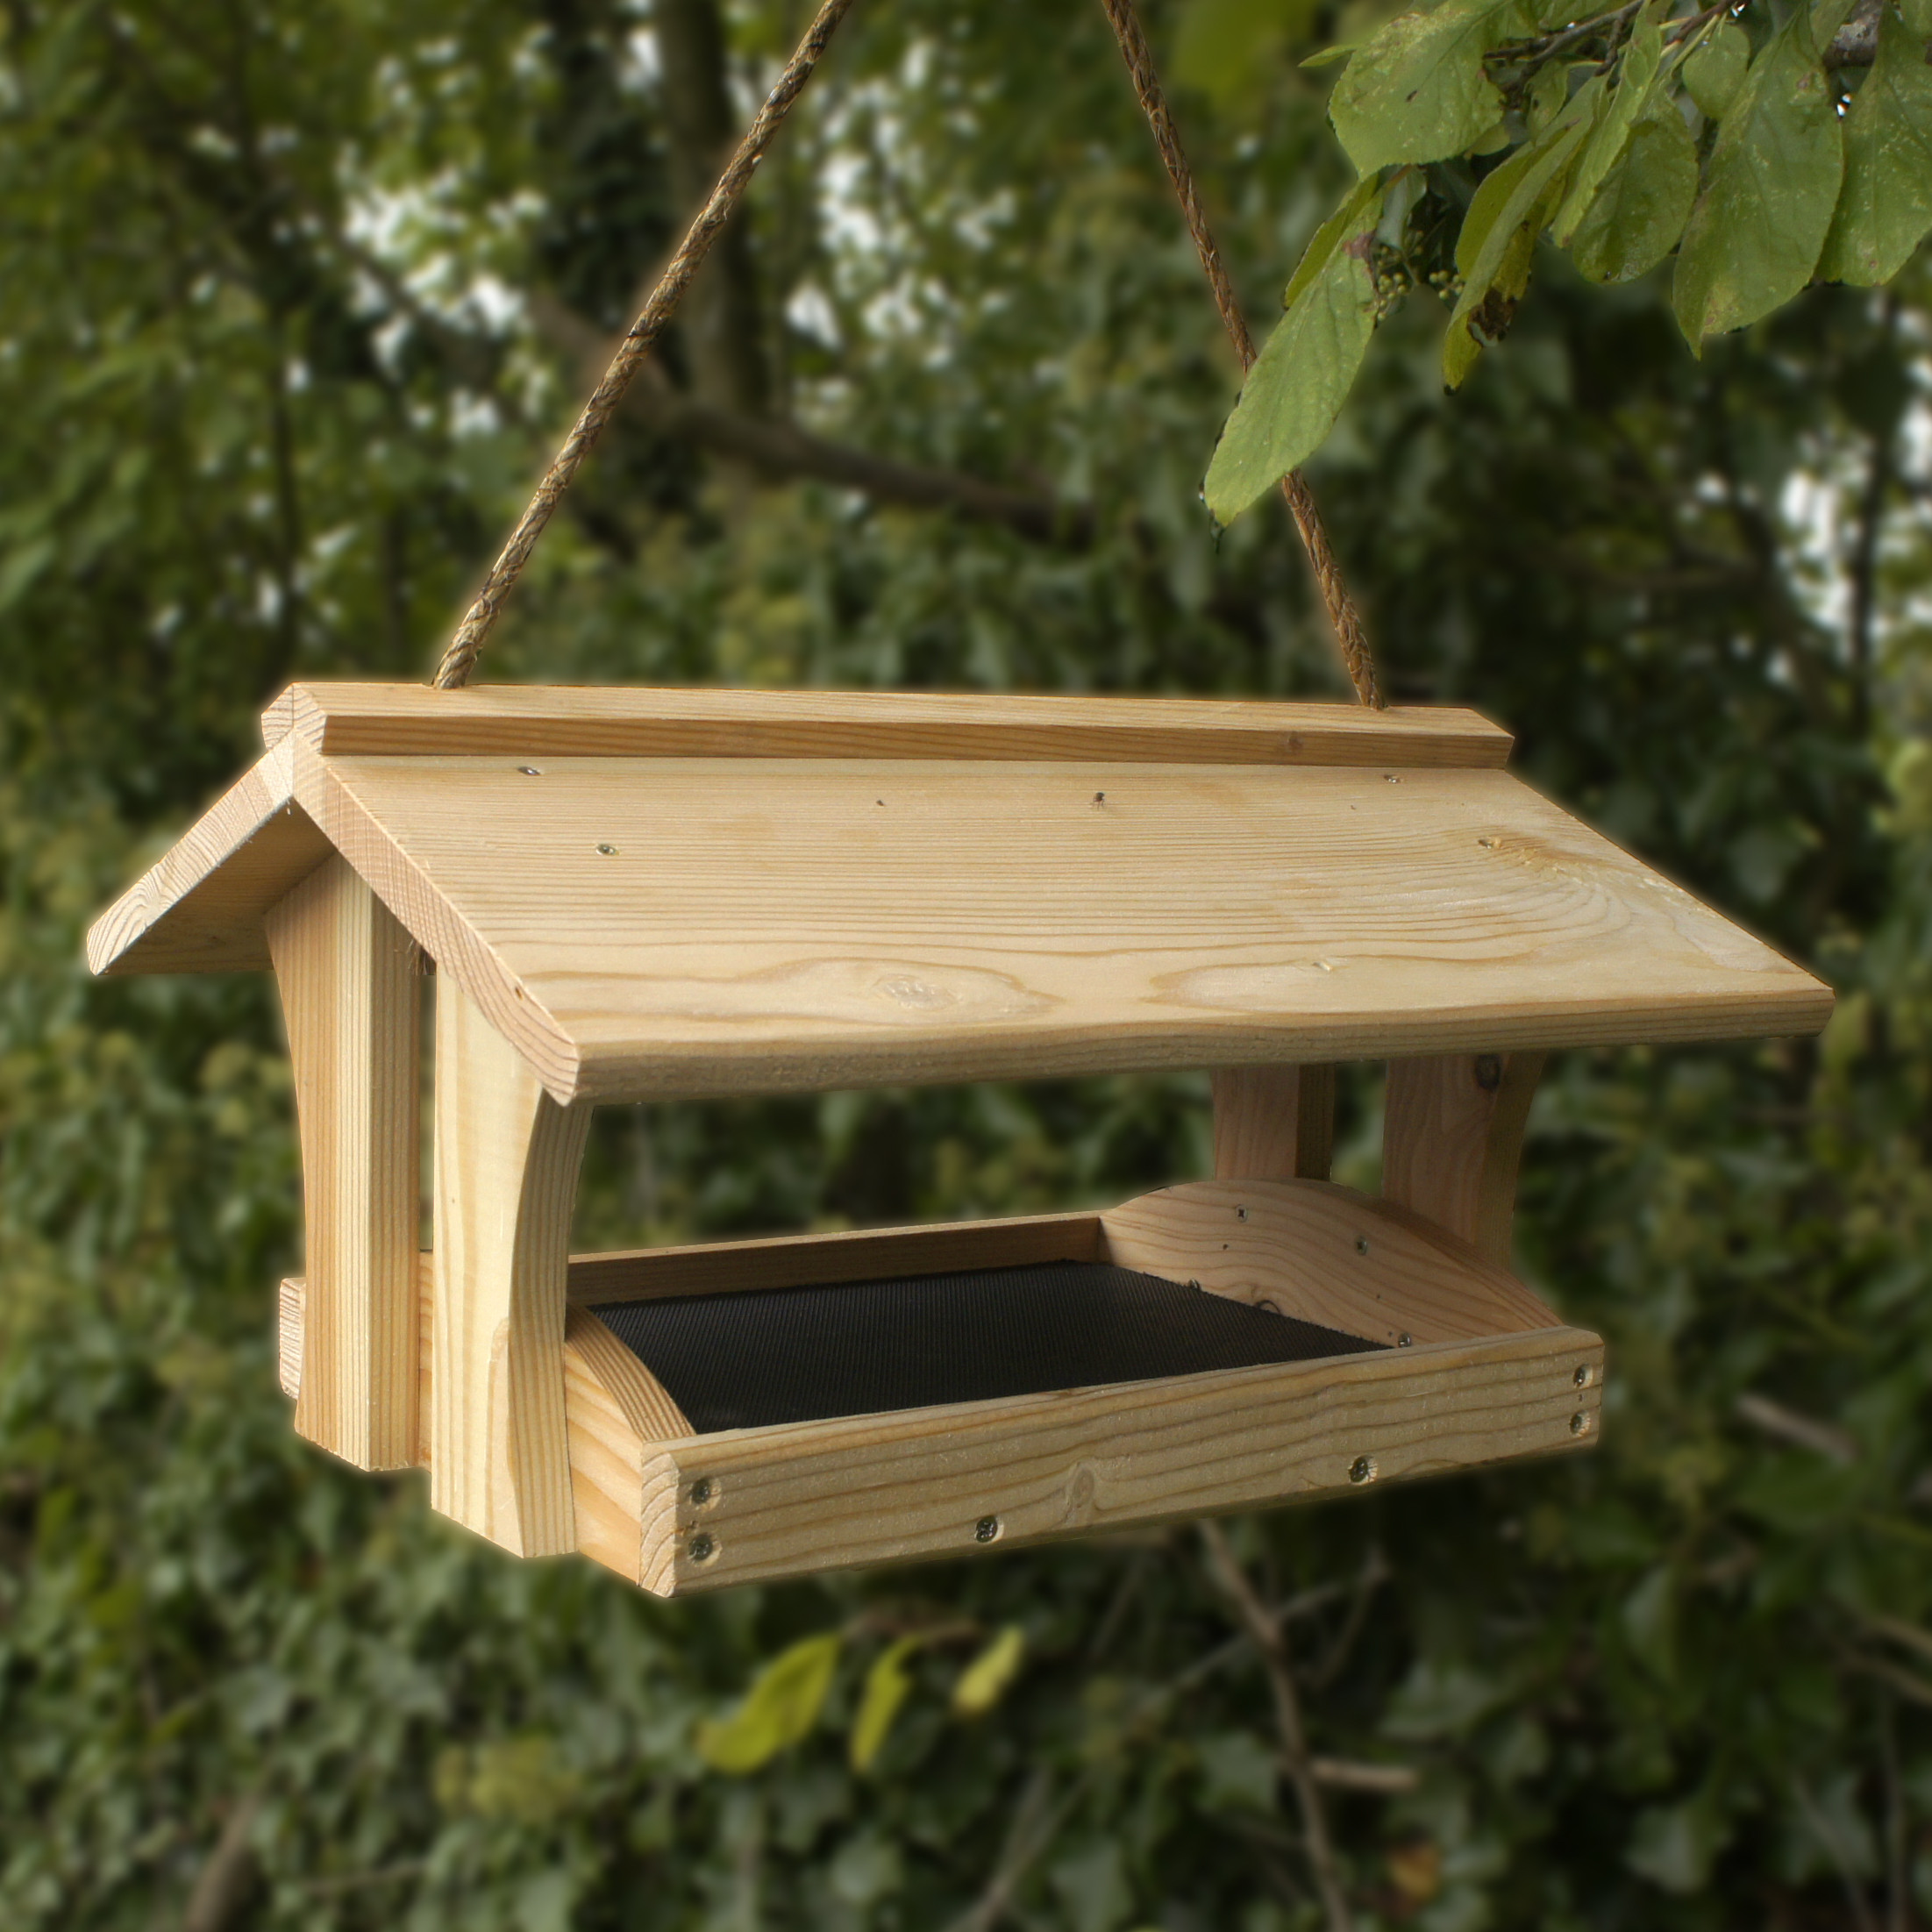 Best ideas about DIY Wooden Bird Feeder
. Save or Pin DIY Bird Feeders on Pinterest Now.